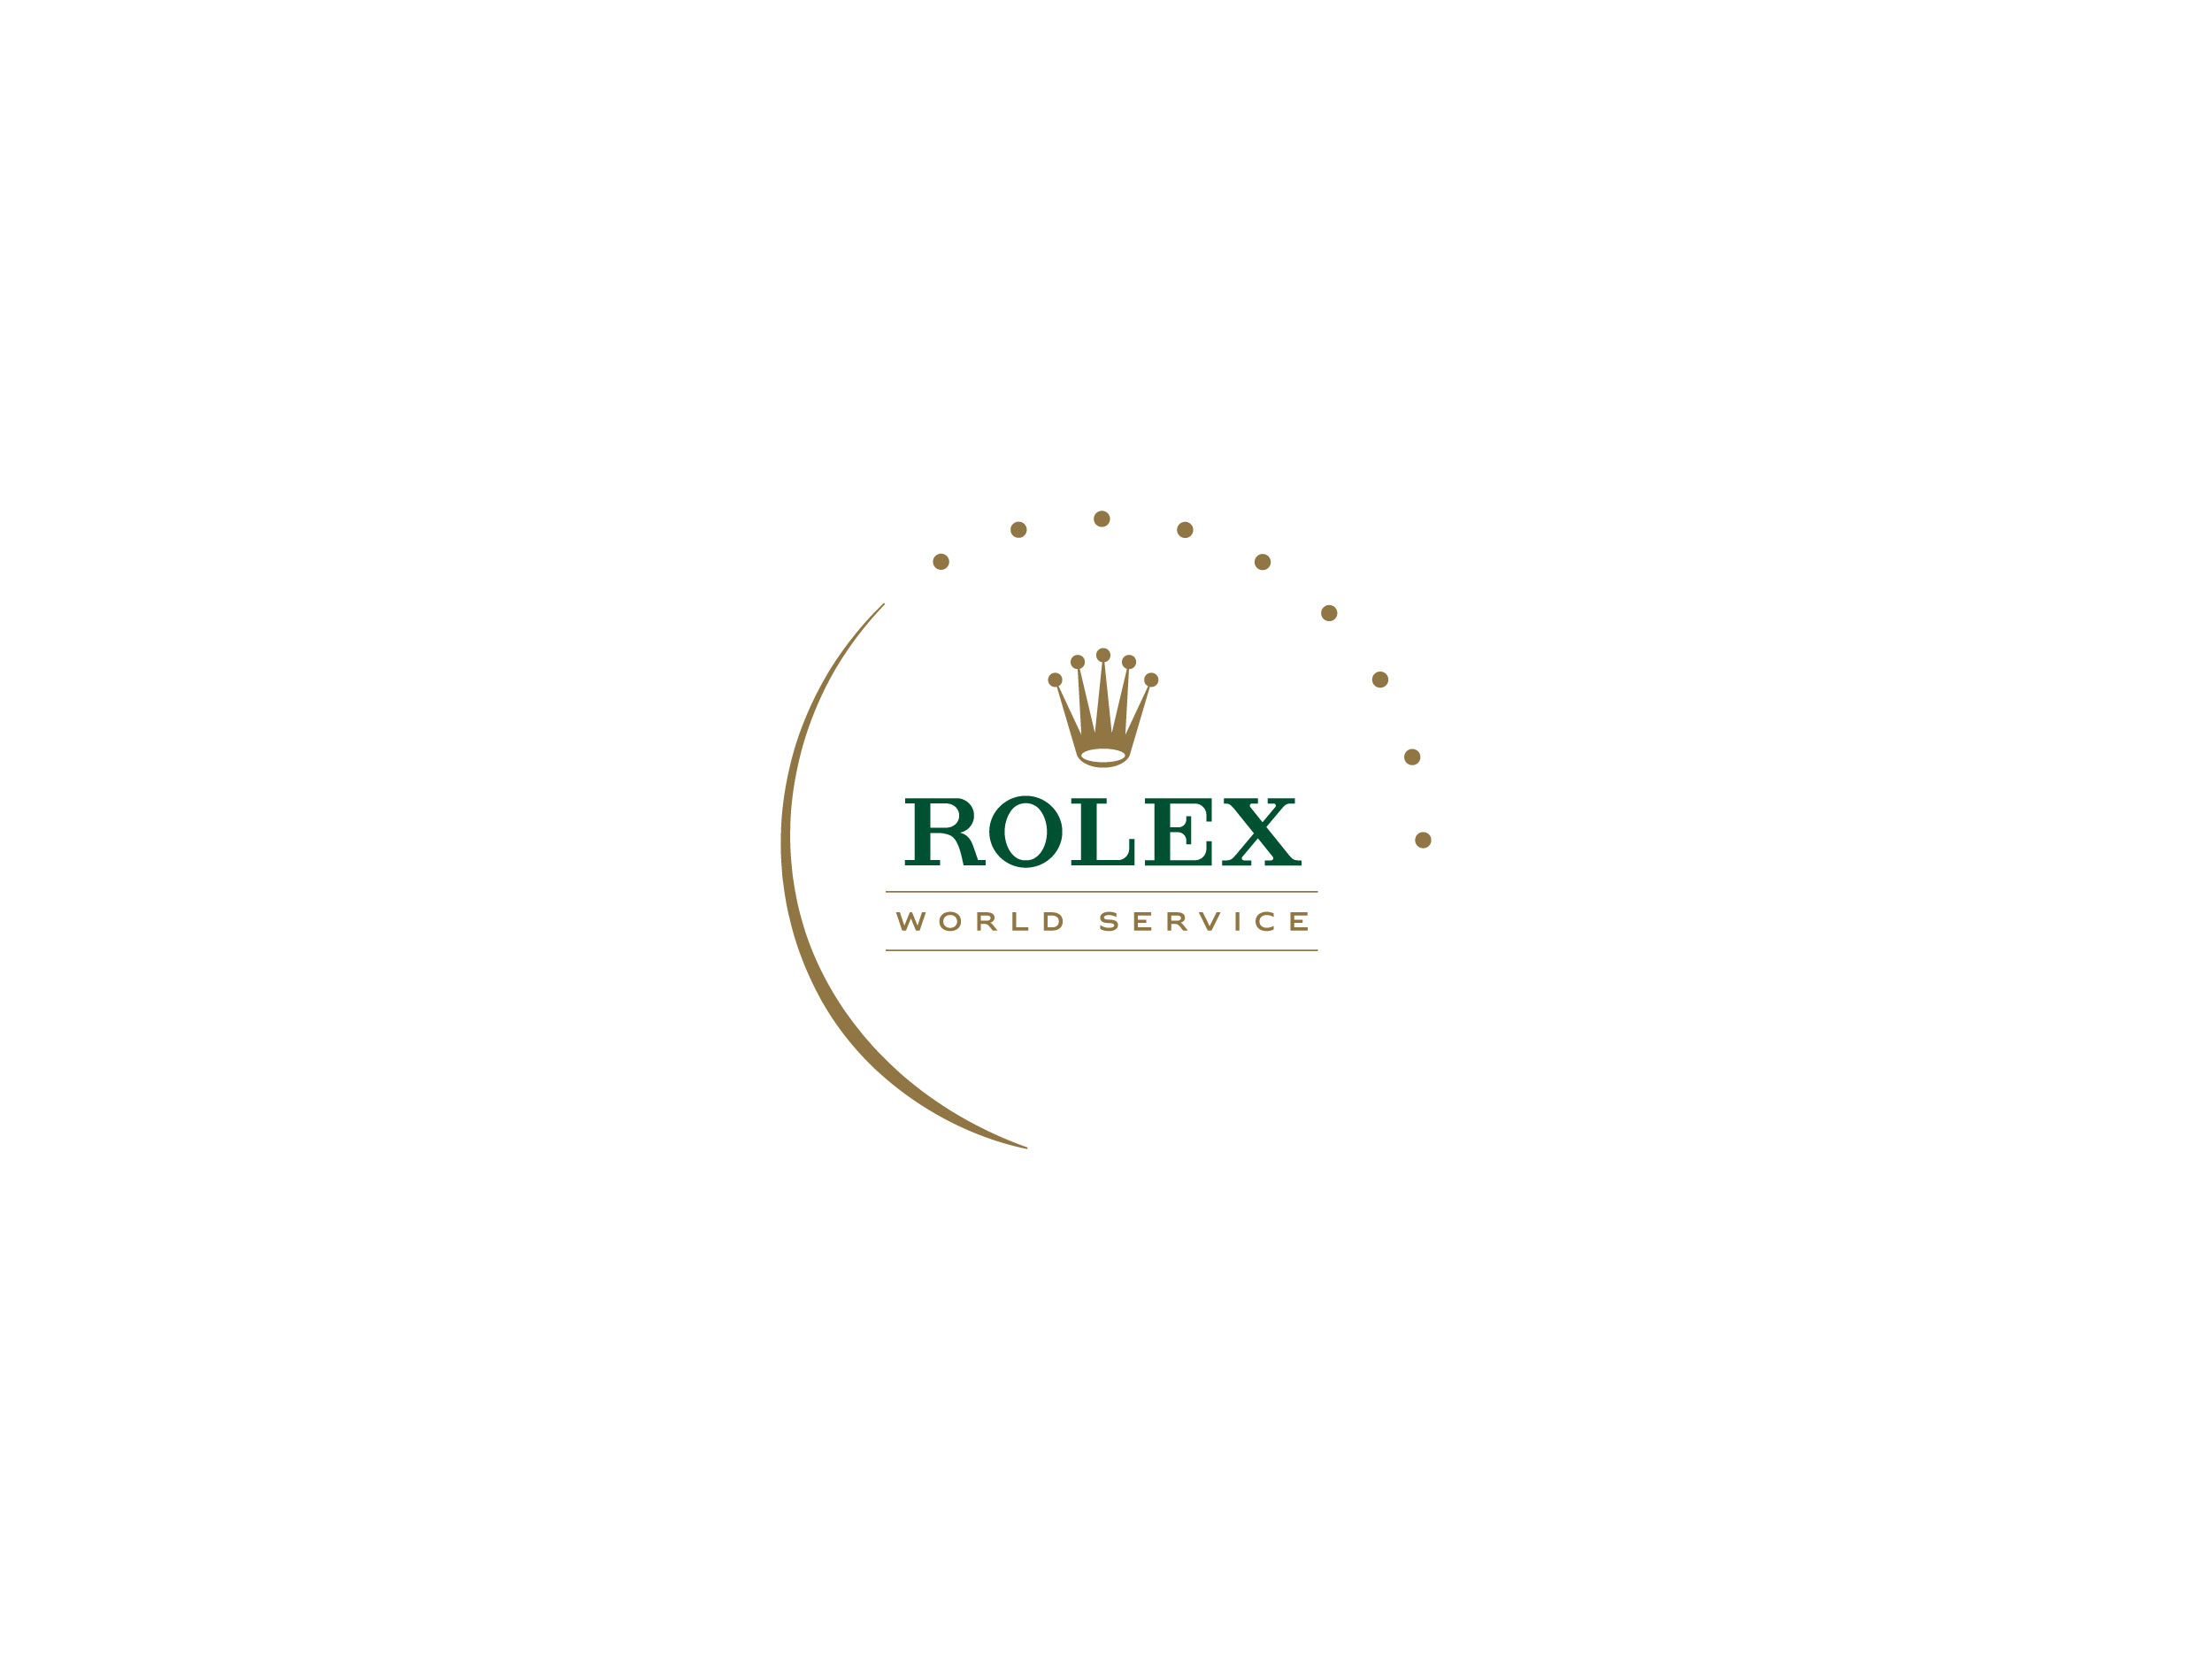 Rolex World Service, logo